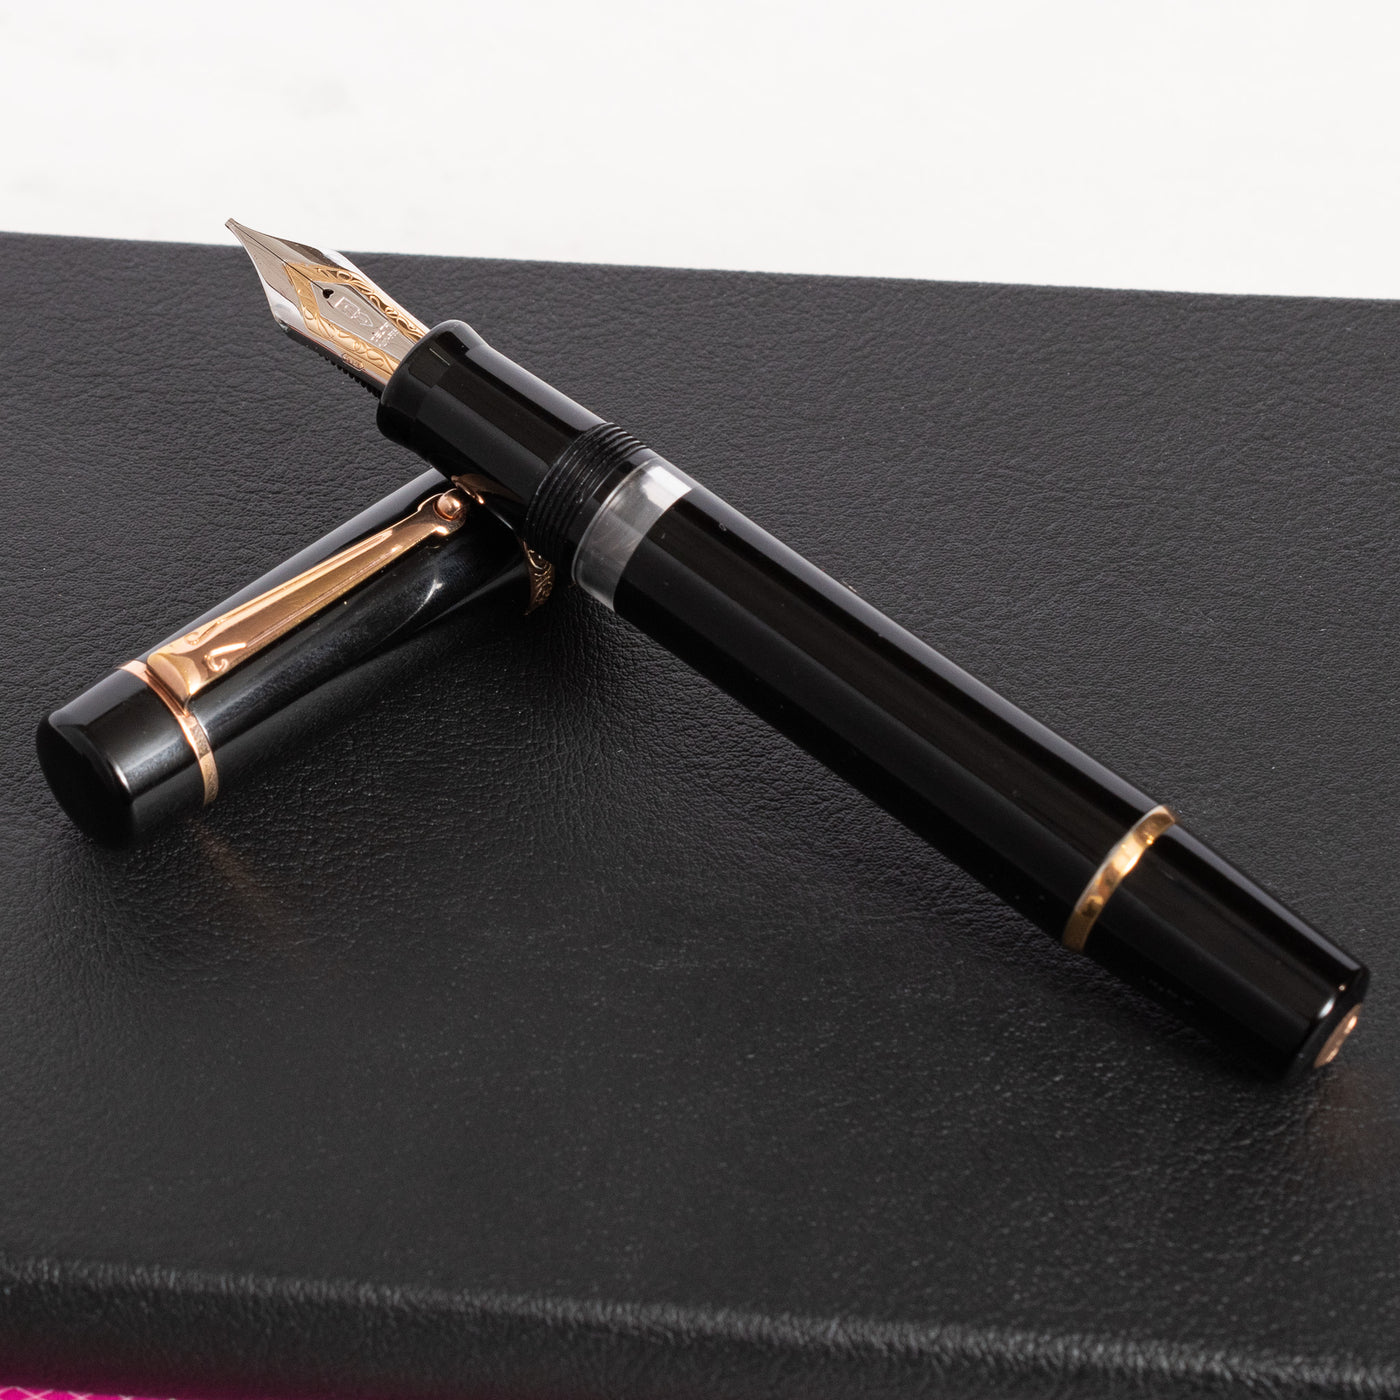 Delta Dolce Vita Stantuffo Fountain Pen with #8 Nib two toned nib